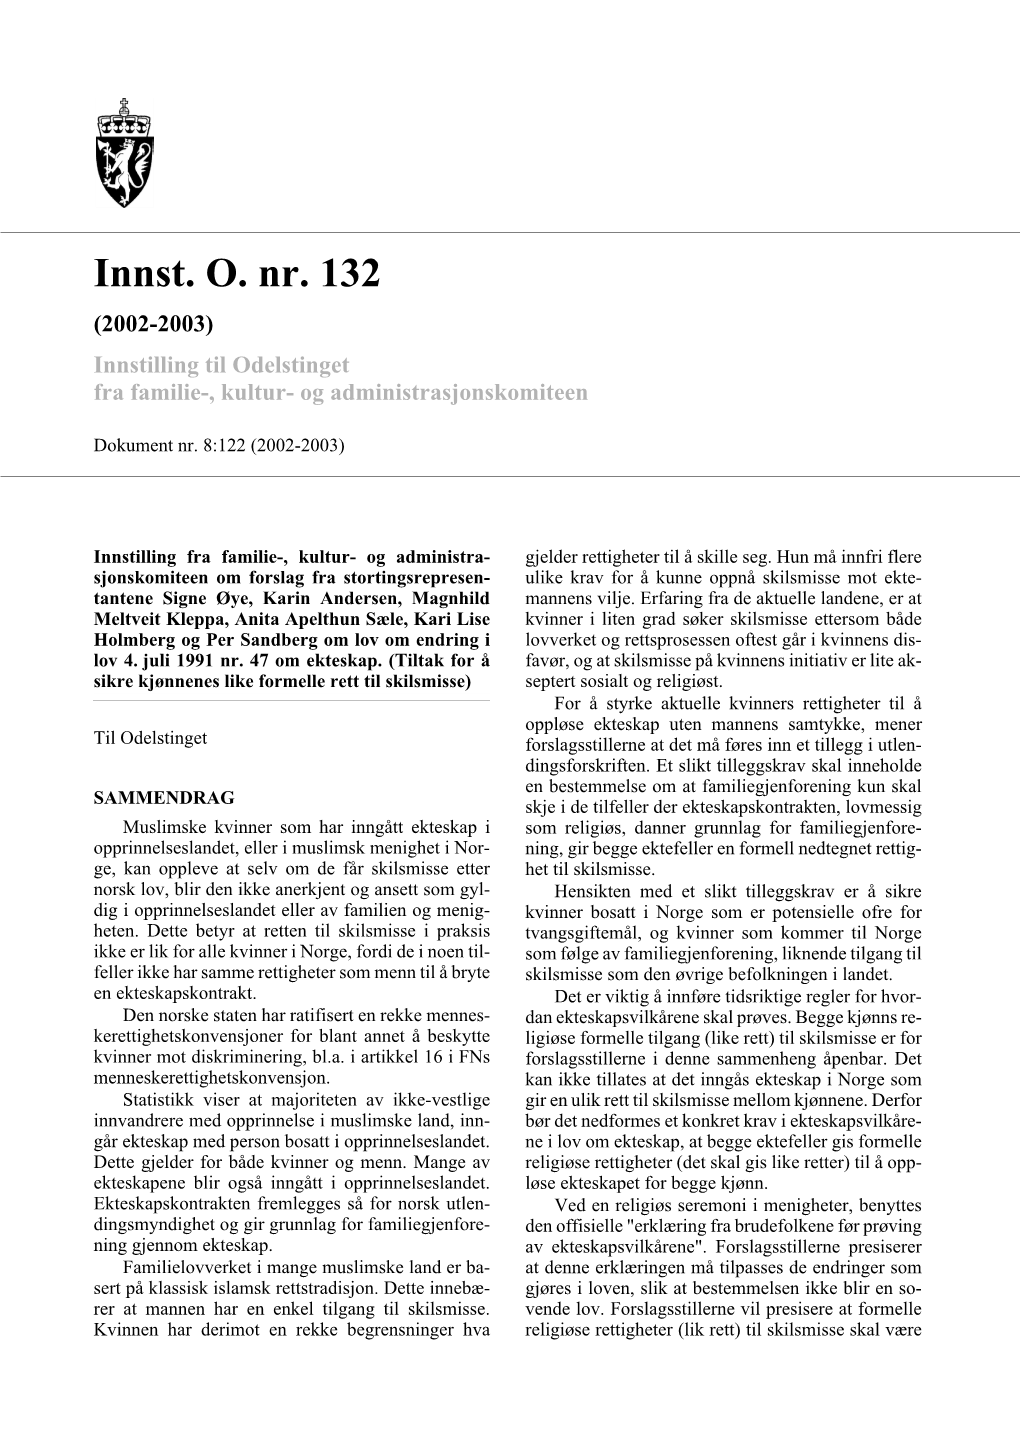 Innst. O. Nr. 132 (2002-2003) Innstilling Til Odelstinget Fra Familie-, Kultur- Og Administrasjonskomiteen